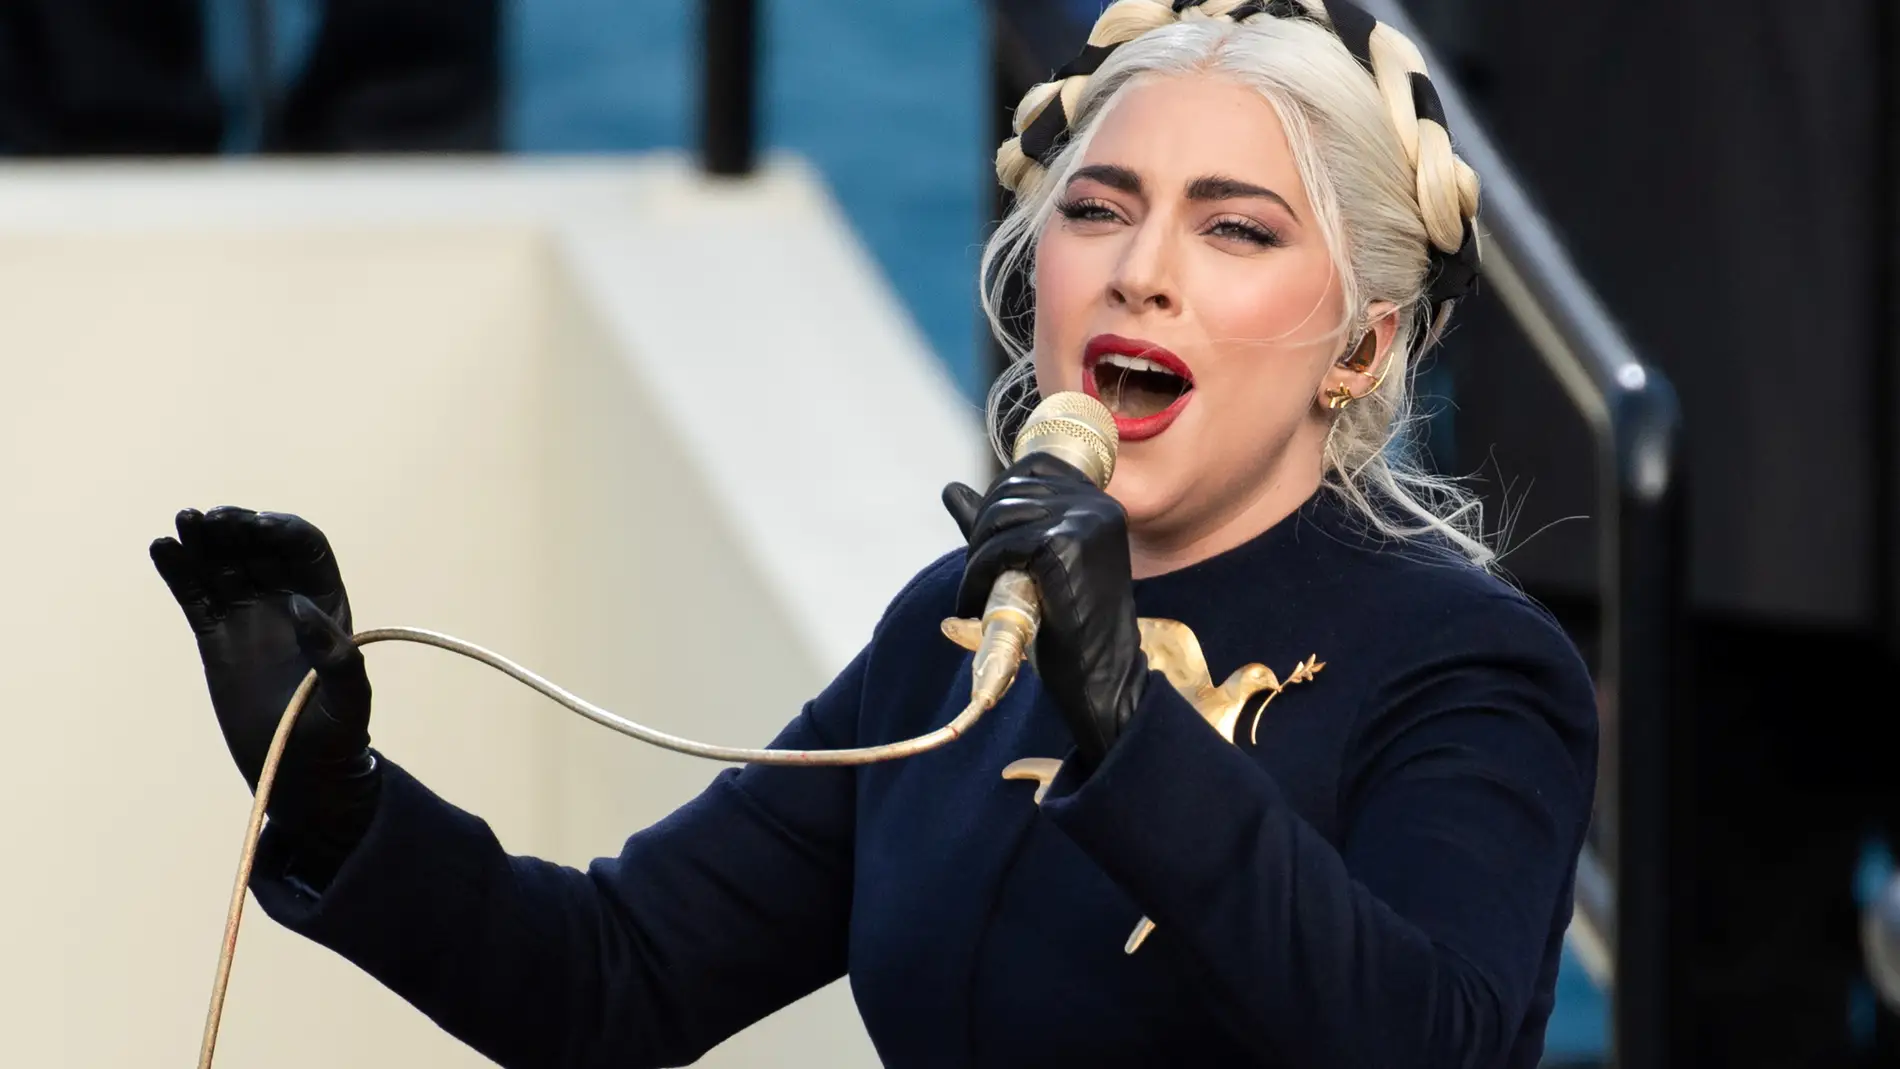 Lady Gaga interpreta el himno durante la toma de posesión